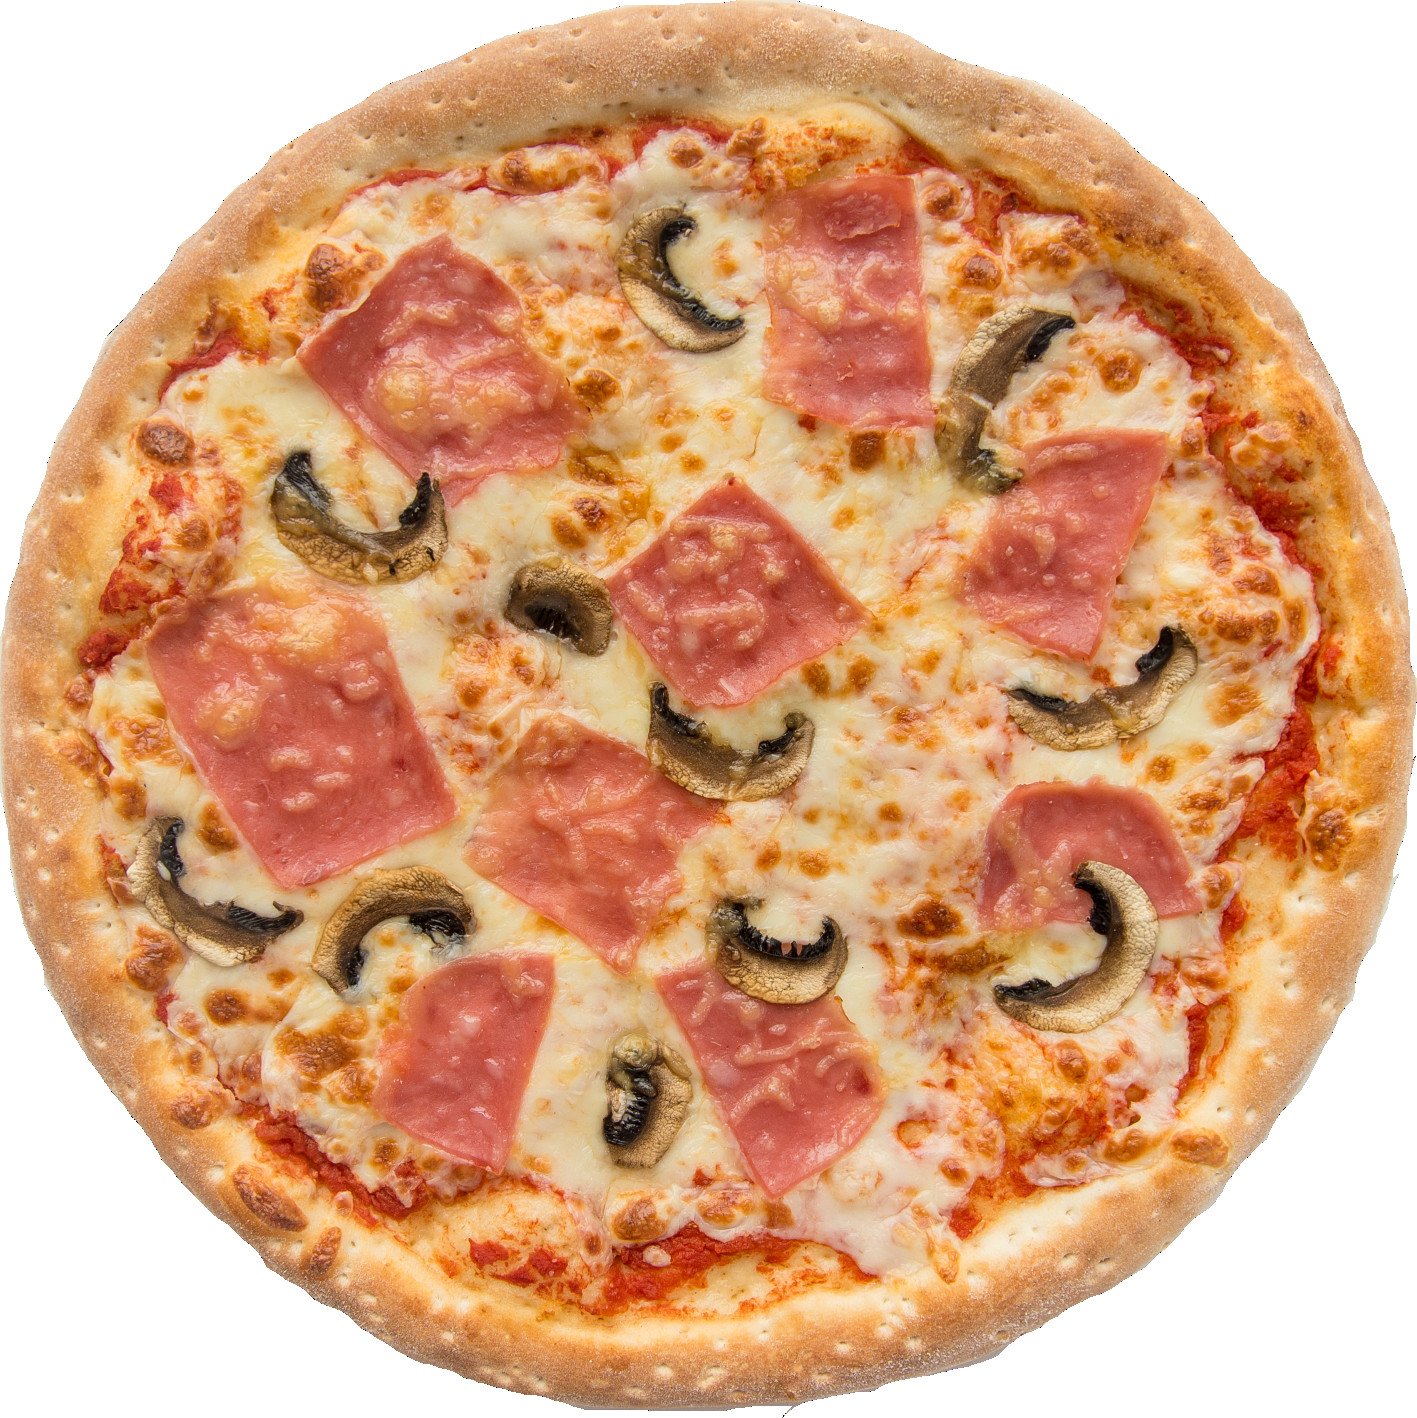 грибная пицца как из мир пиццы фото 104